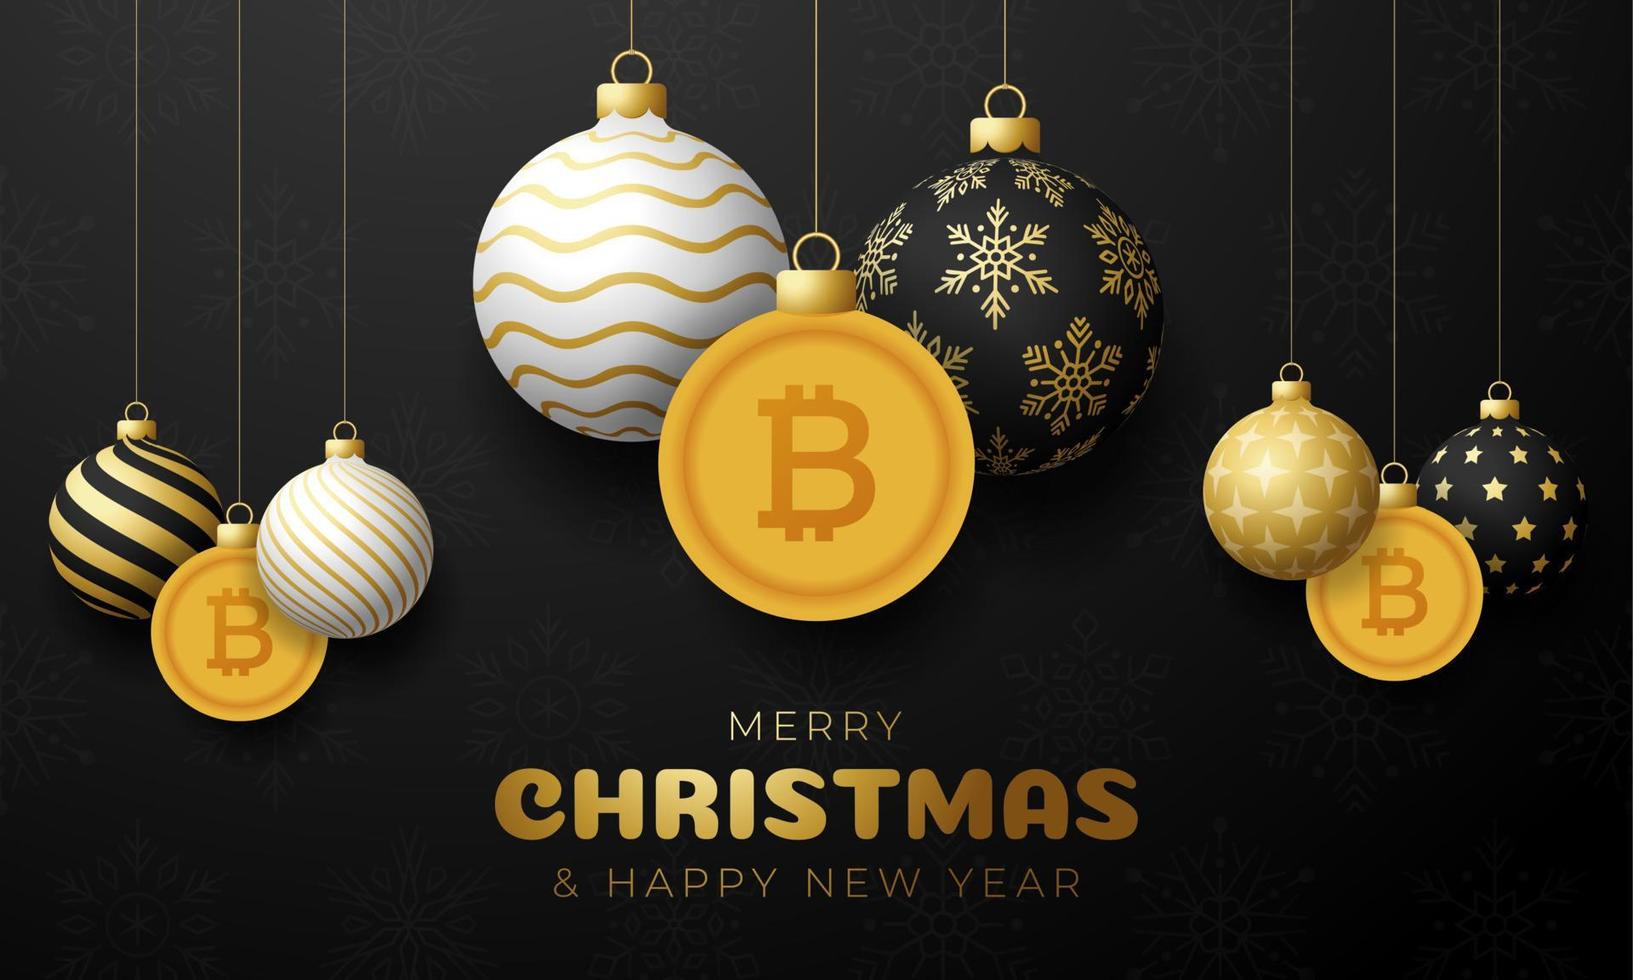 vrolijke kerst gouden bitcoin symbool banner. bitcoin teken als kerstbal hangende wenskaart. vector afbeelding voor kerstmis, financiën, nieuwjaarsdag, bankieren, geld